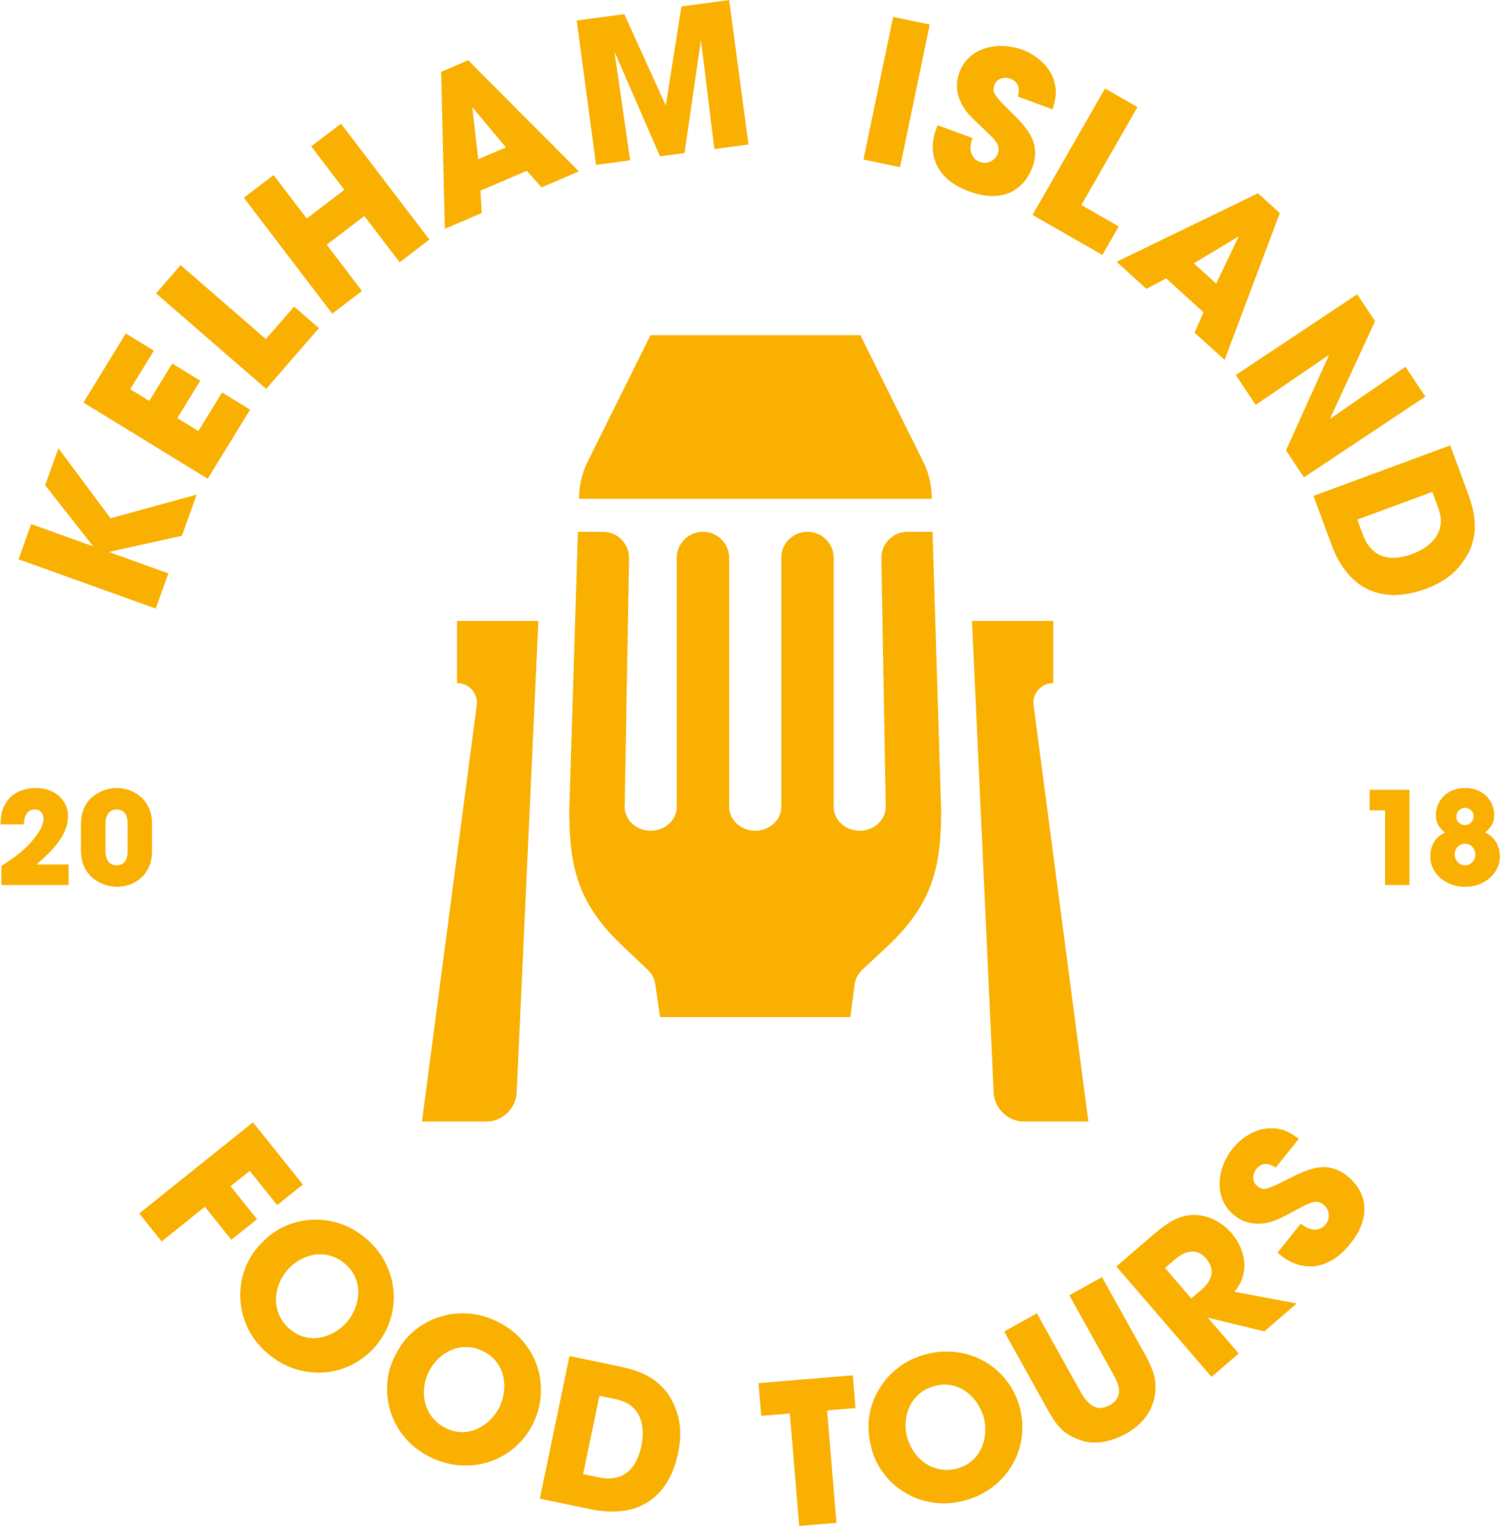 KELHAM ISLAND FOOD TOURS IN SHEFFIELD